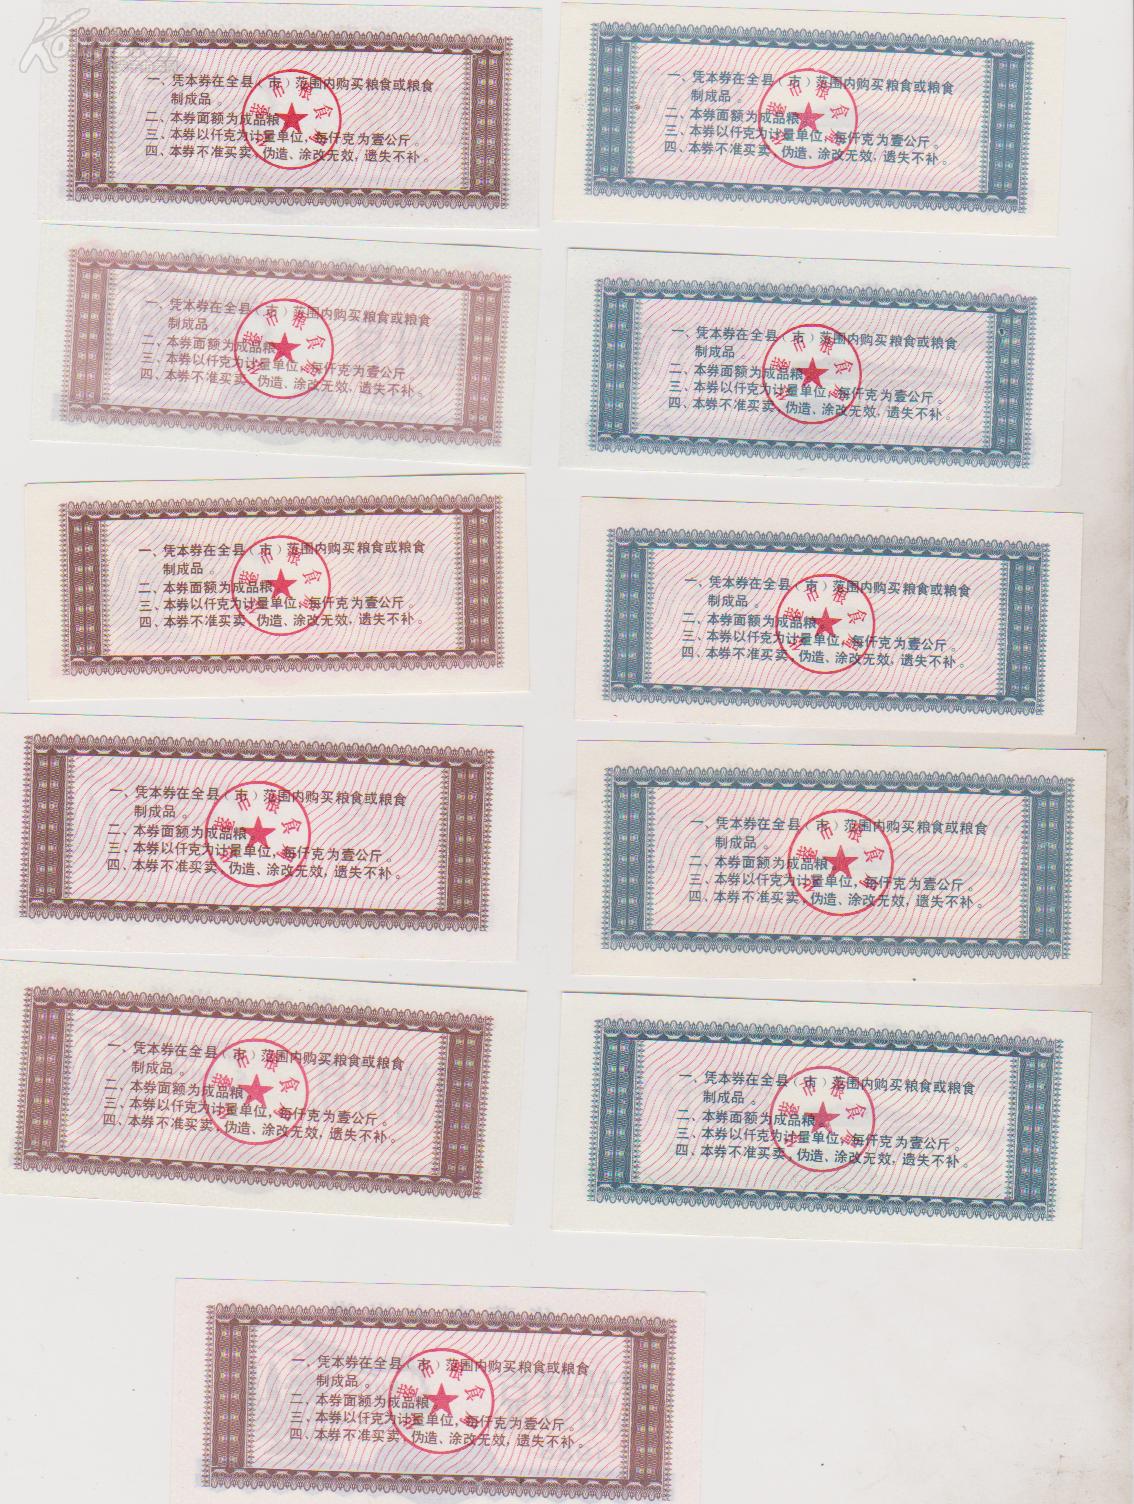 四川华蓥县1988年《大米---面粉票》大全套11枚。华蓥县粮食局粮票